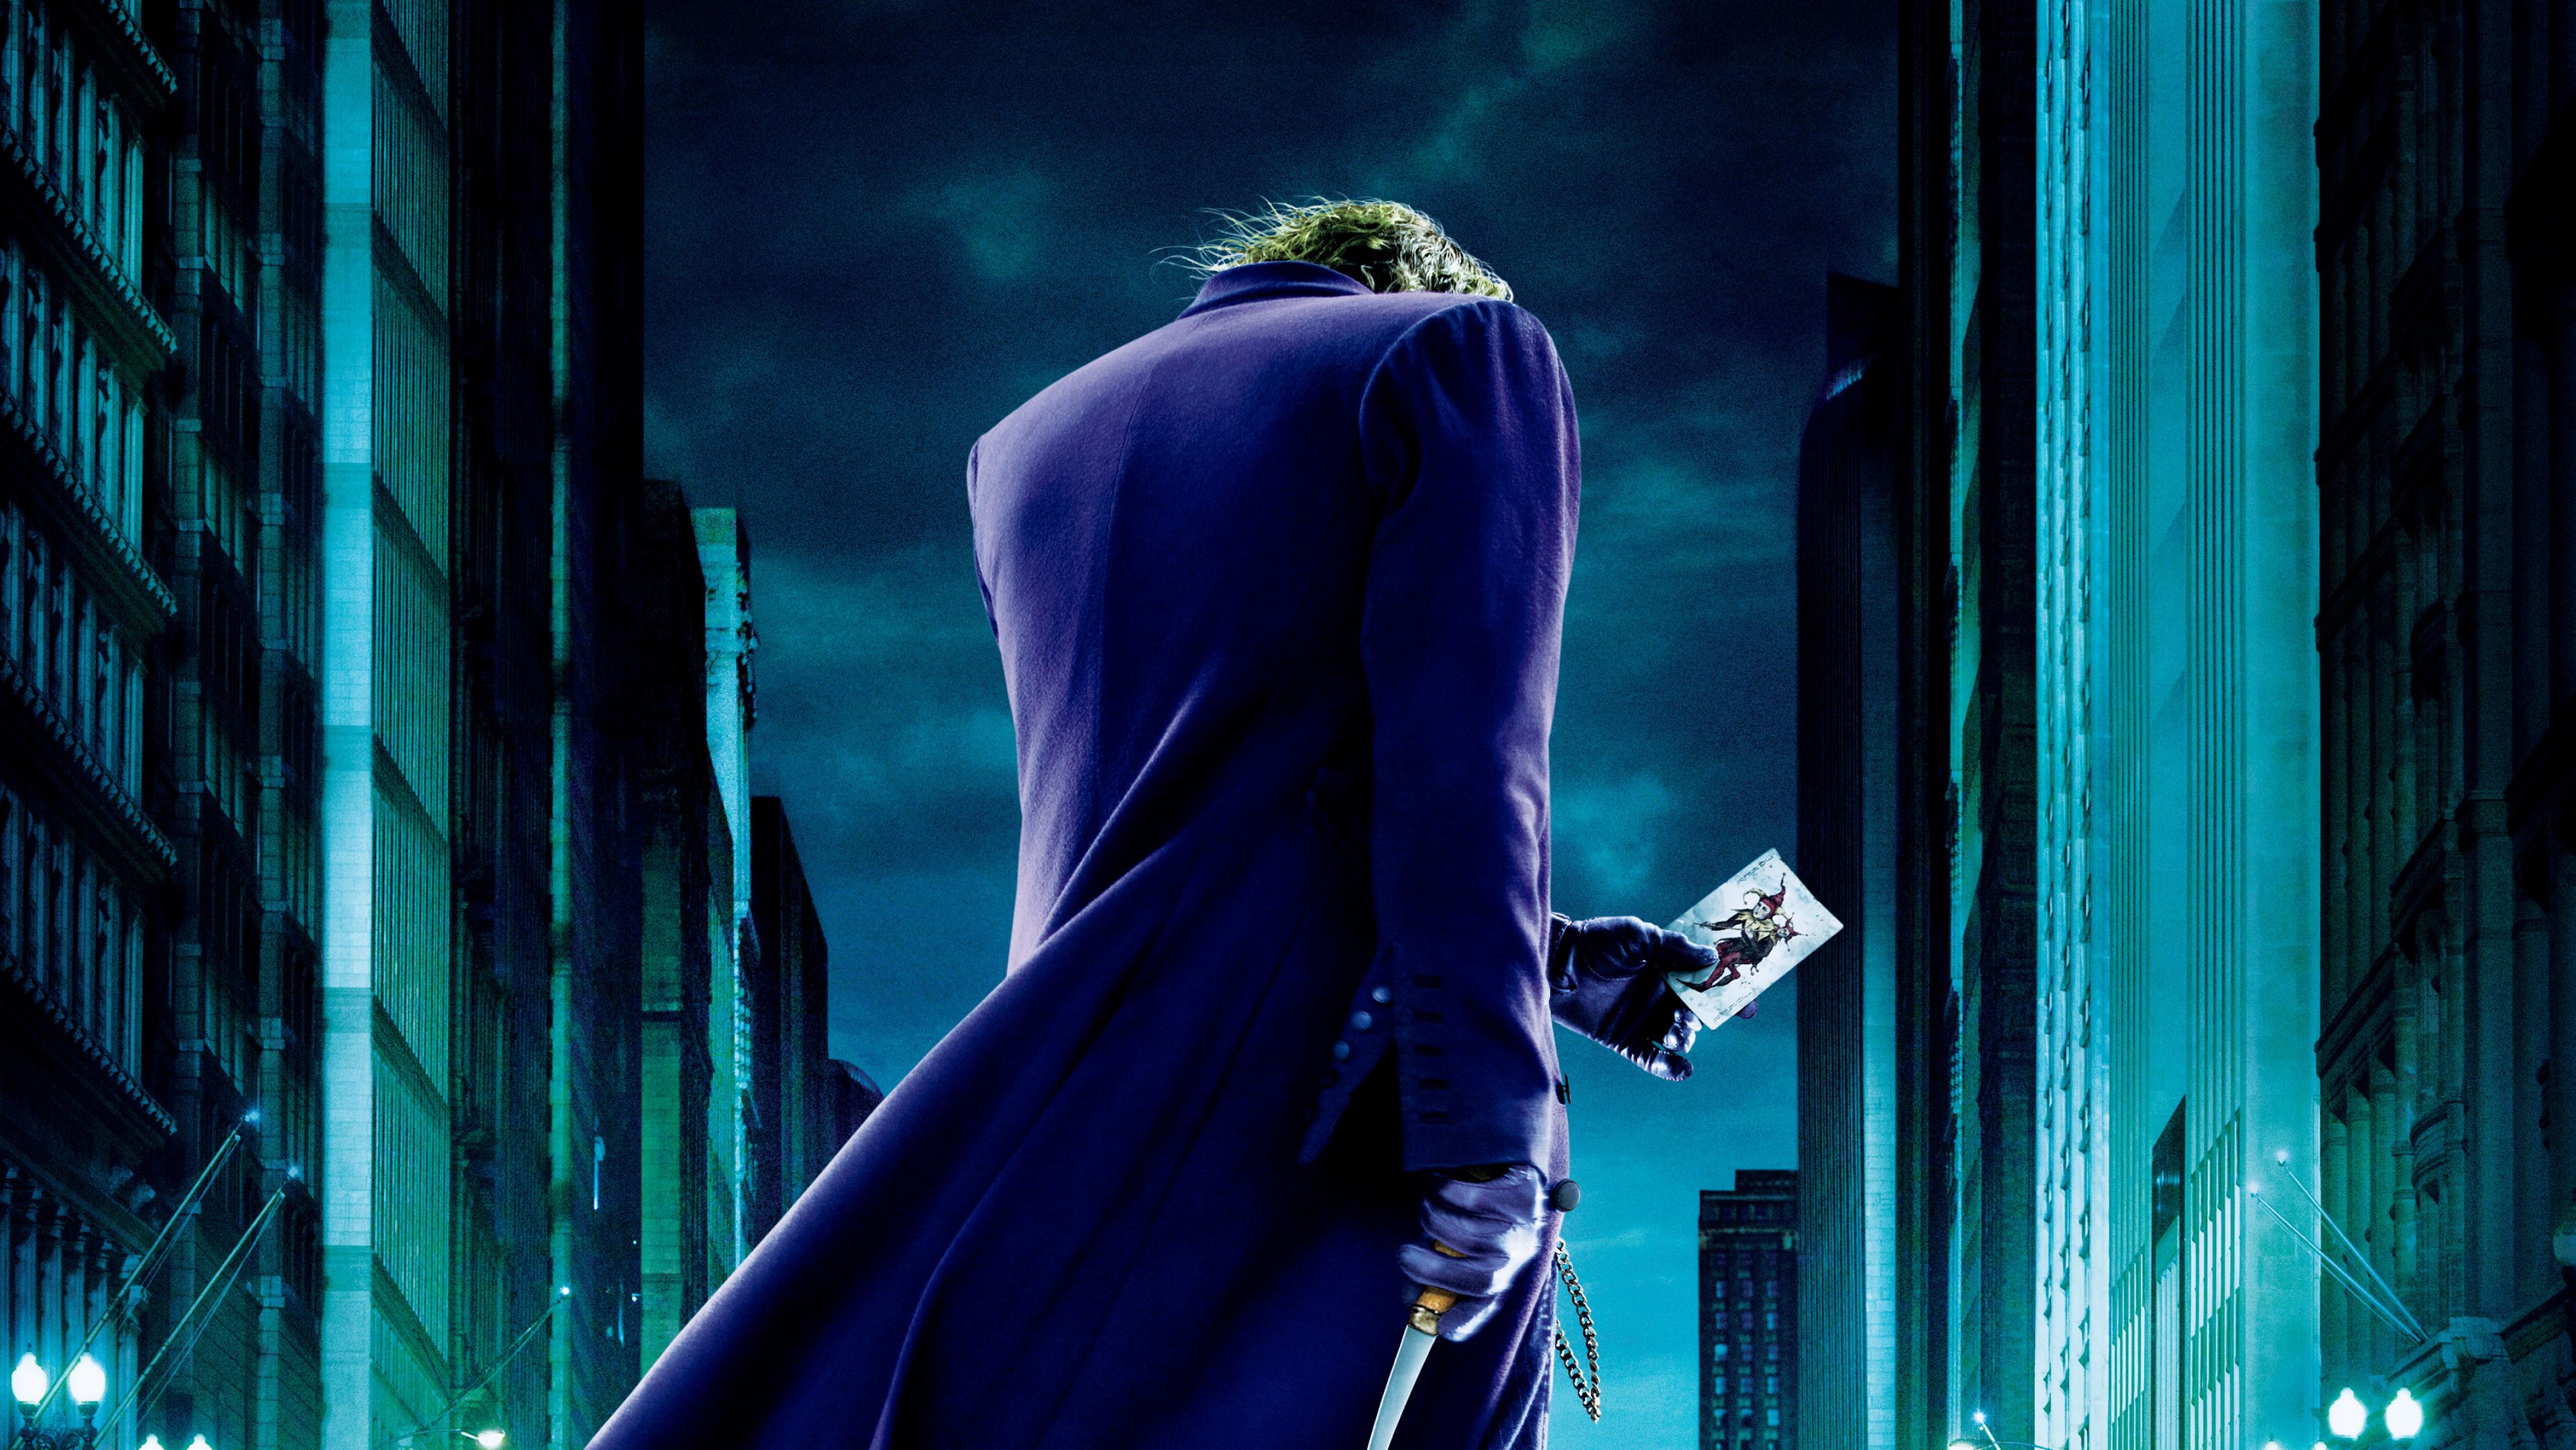 Joker The Dark Knight 4k, HD Movies, 4k Wallpaper, Image